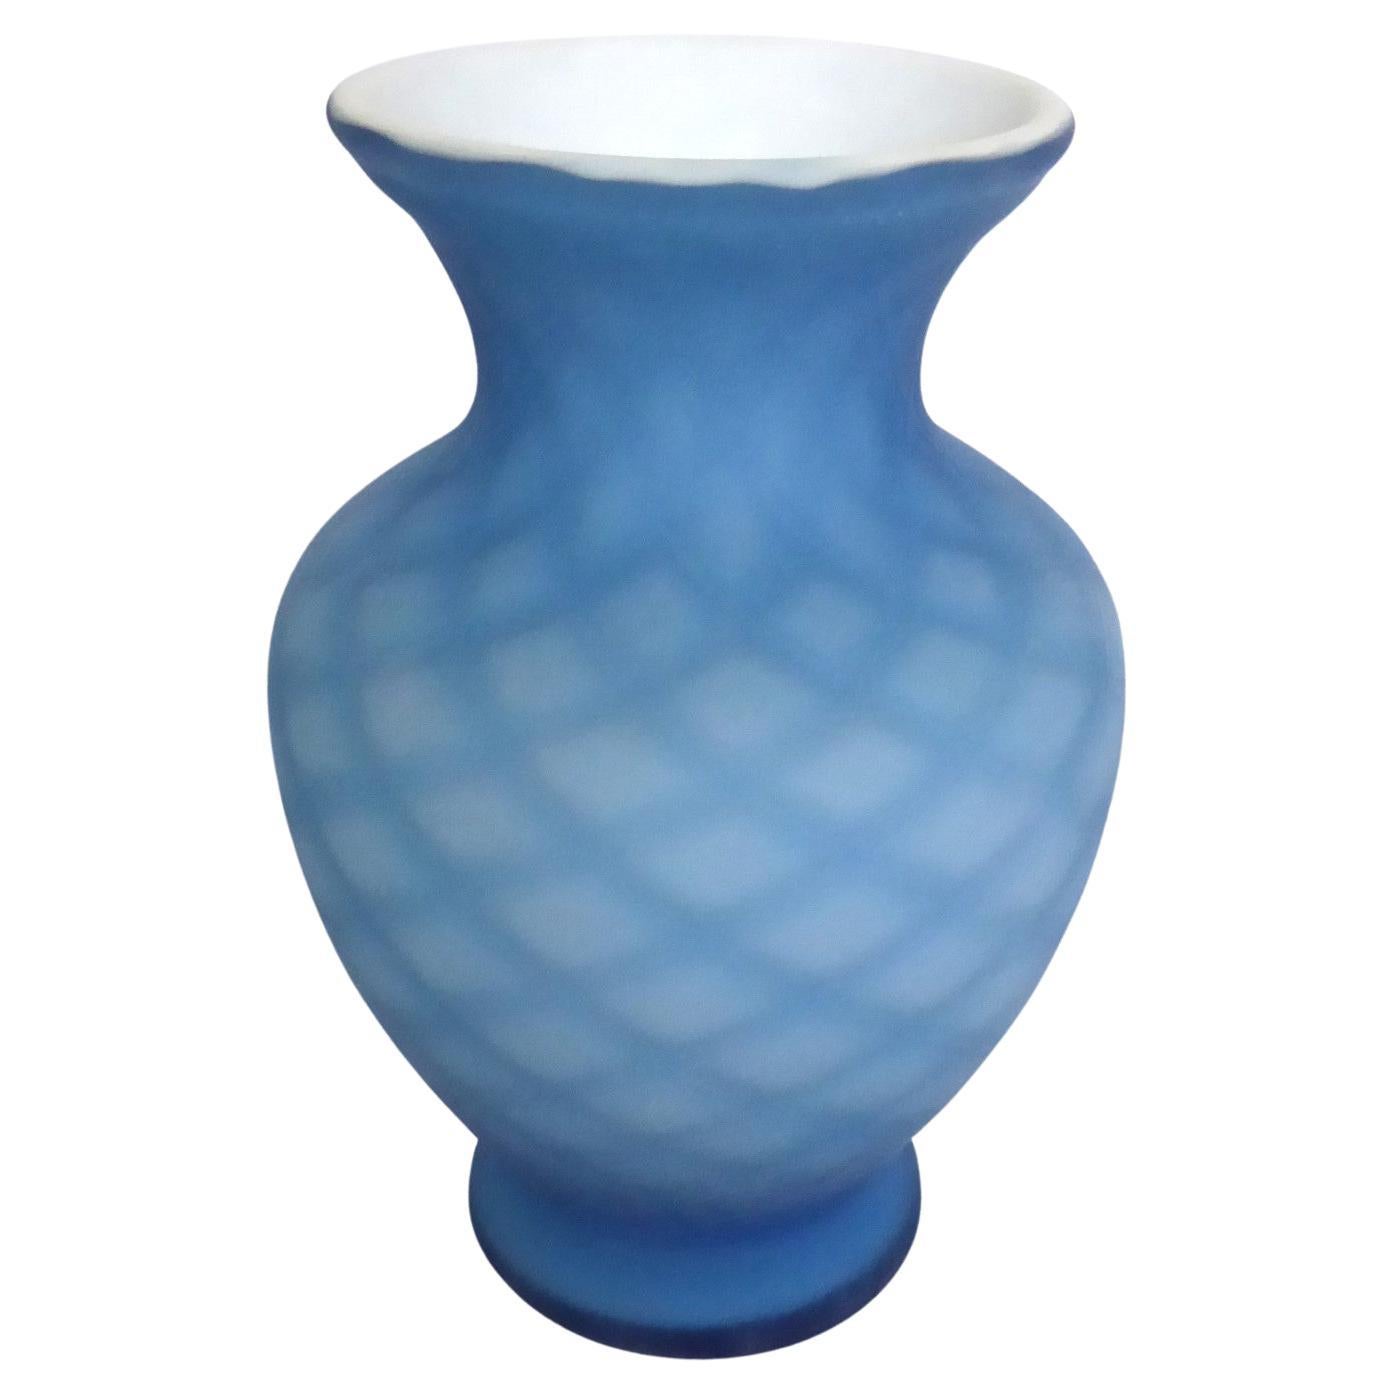  Vintage Fenton Art Glass Blue Handmade Optic Cased Satin Glass Vase 1980s